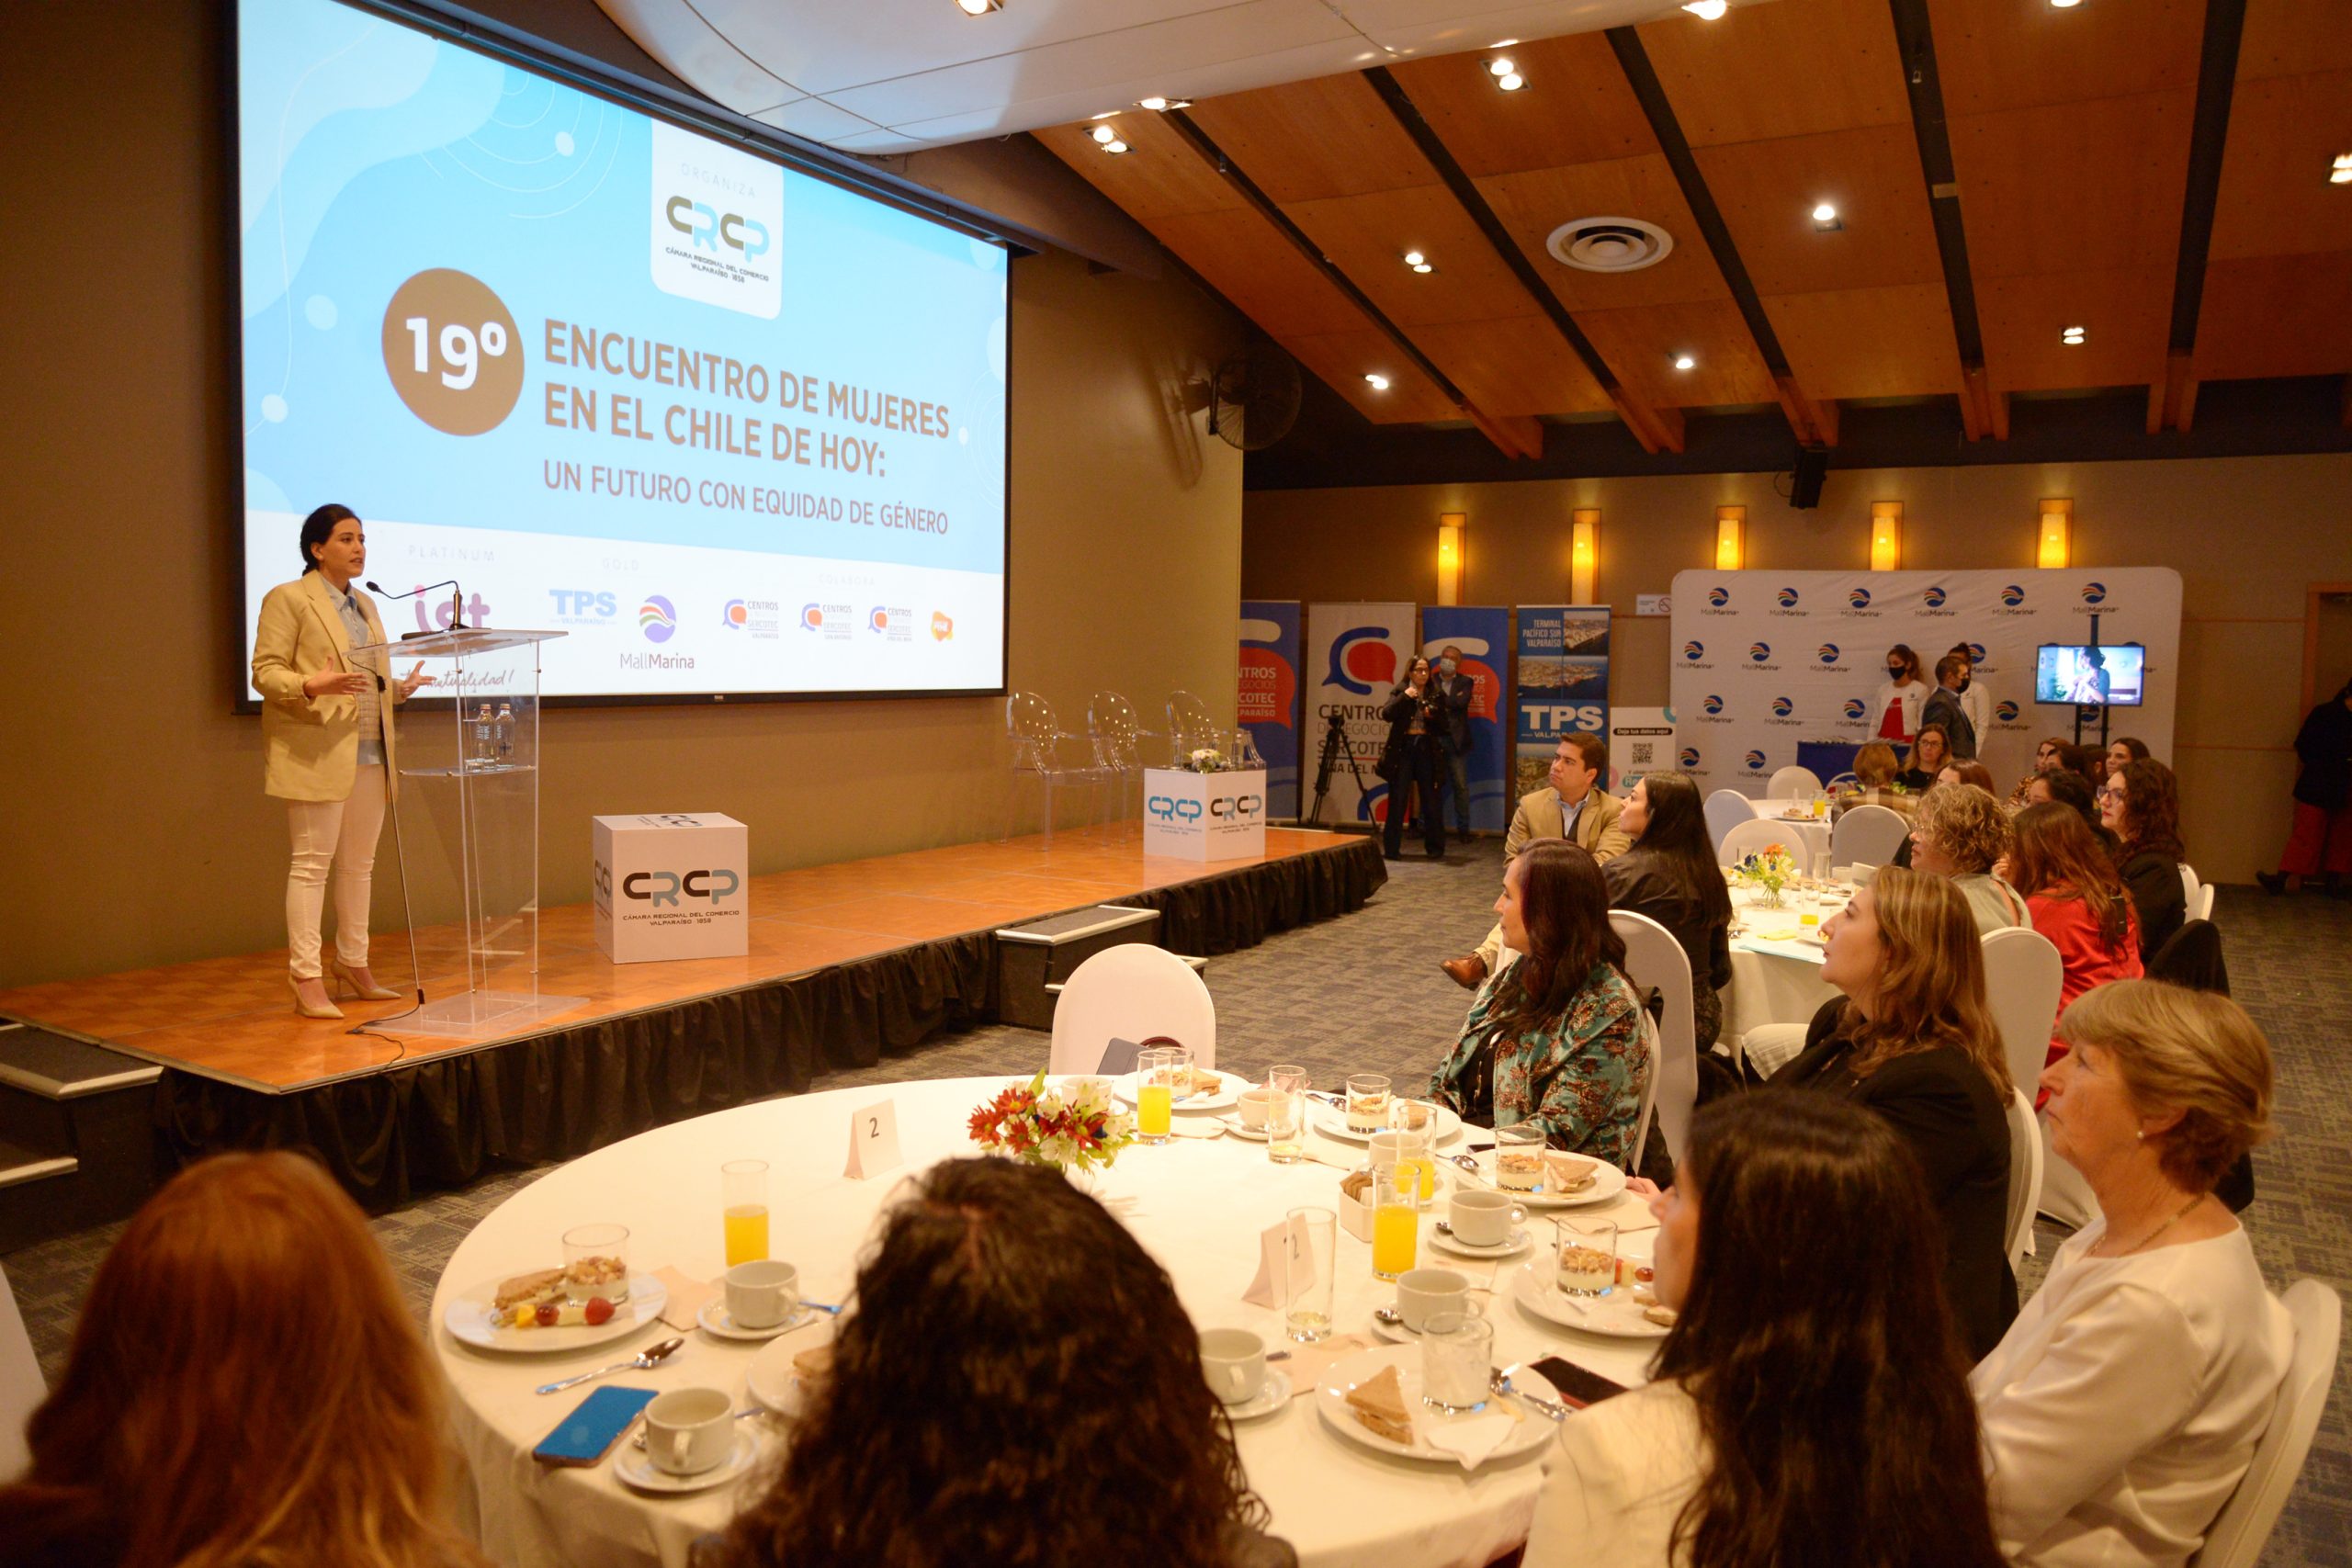 19° Encuentro de mujeres: alcaldesa Ripamonti resaltó la importancia de la equidad de género en el ámbito laboral, público y privado